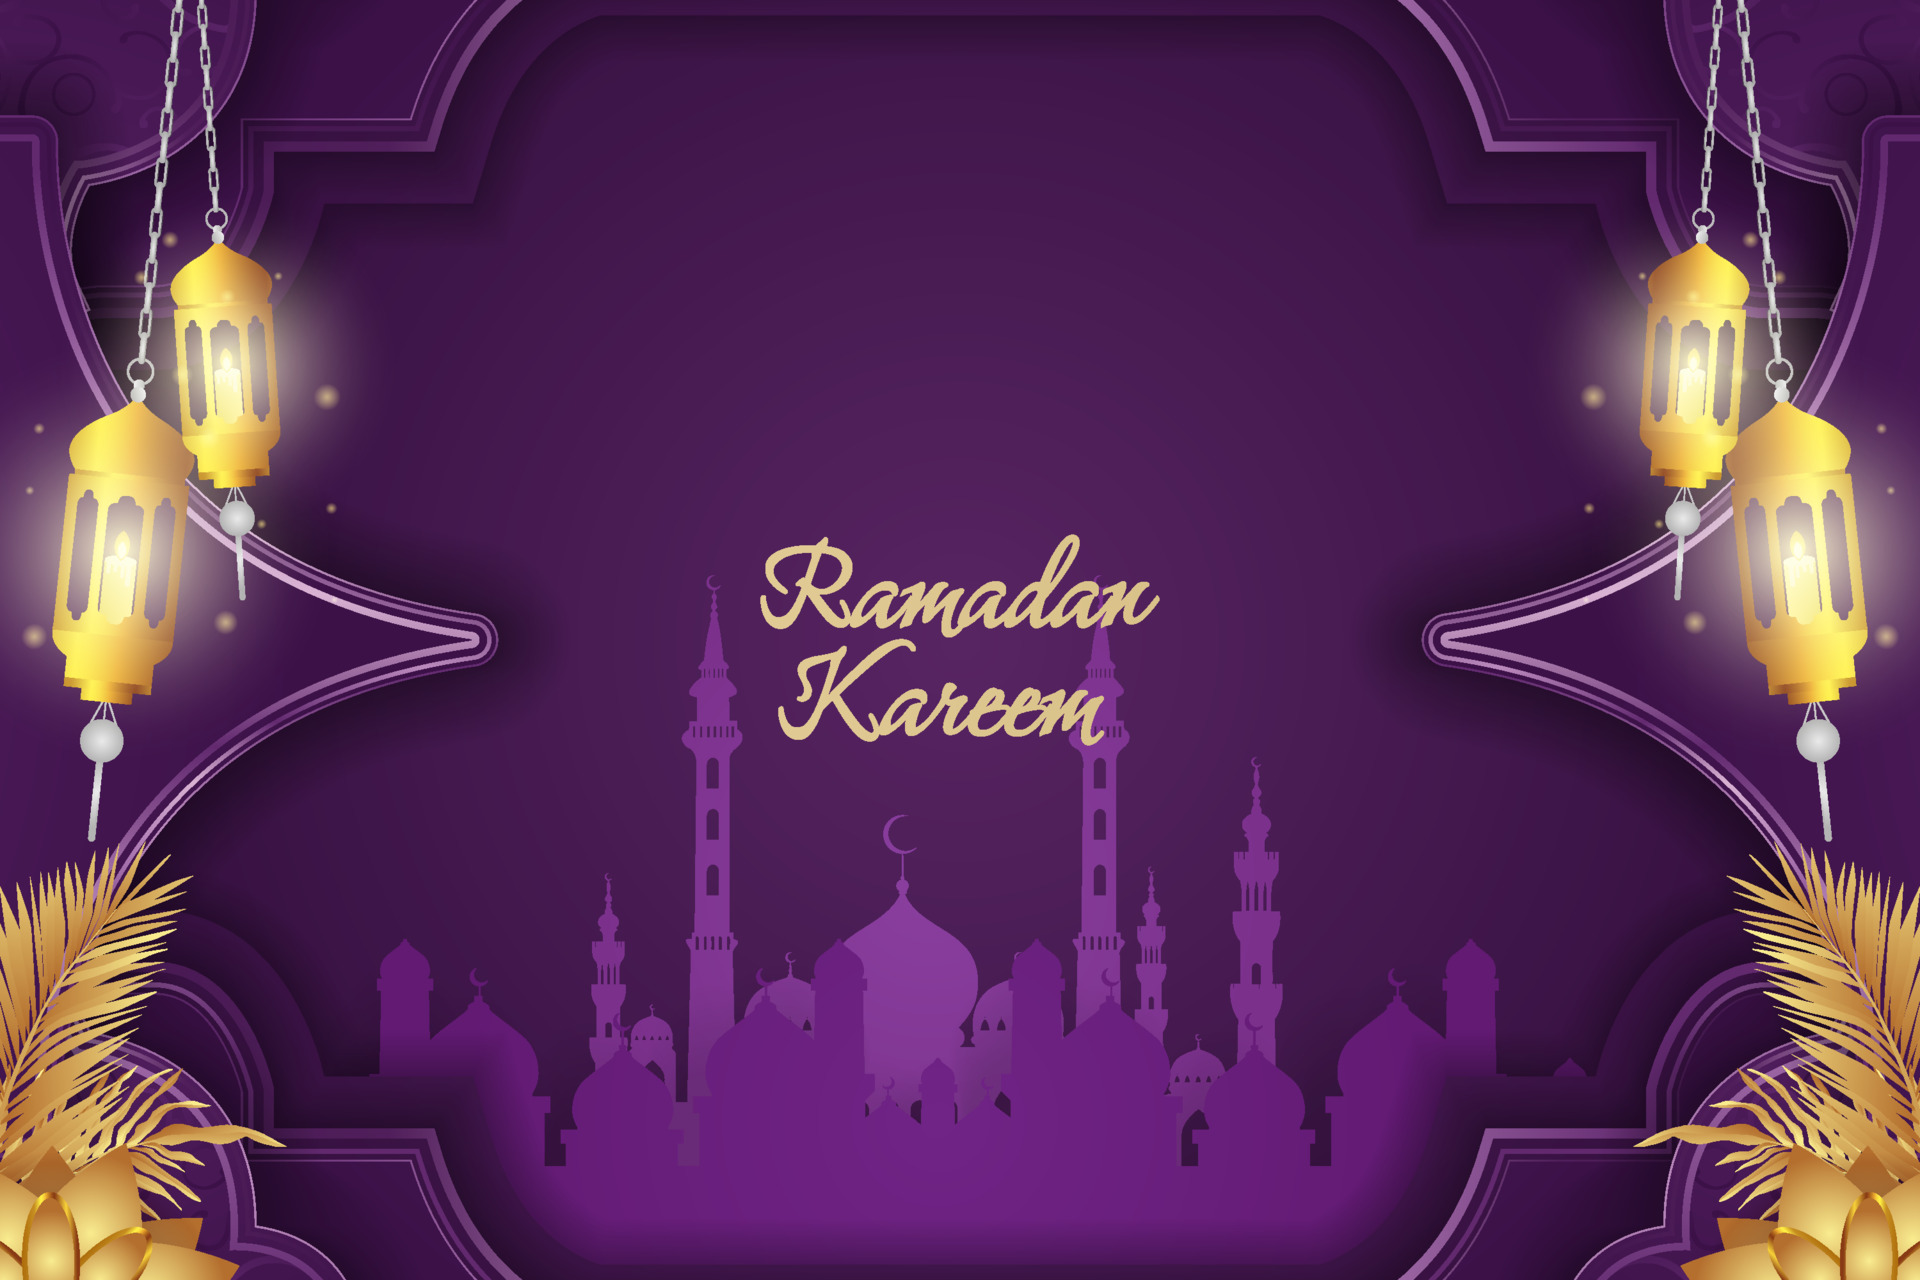 Ramadan Kareem: Chào mừng mùa Ramadan đến! Hãy cùng chiêm ngưỡng hình ảnh về tinh túy của tháng Ramadan hội tụ vào bữa ăn tối thánh thiện, lễ đền tạ và những giờ phút suy tư thiêng liêng, tạo nên không khí trang trọng, đậm chất tôn giáo. Cùng cảm nhận sự chân thành của những người đồng tâm tại mỗi góc phố.